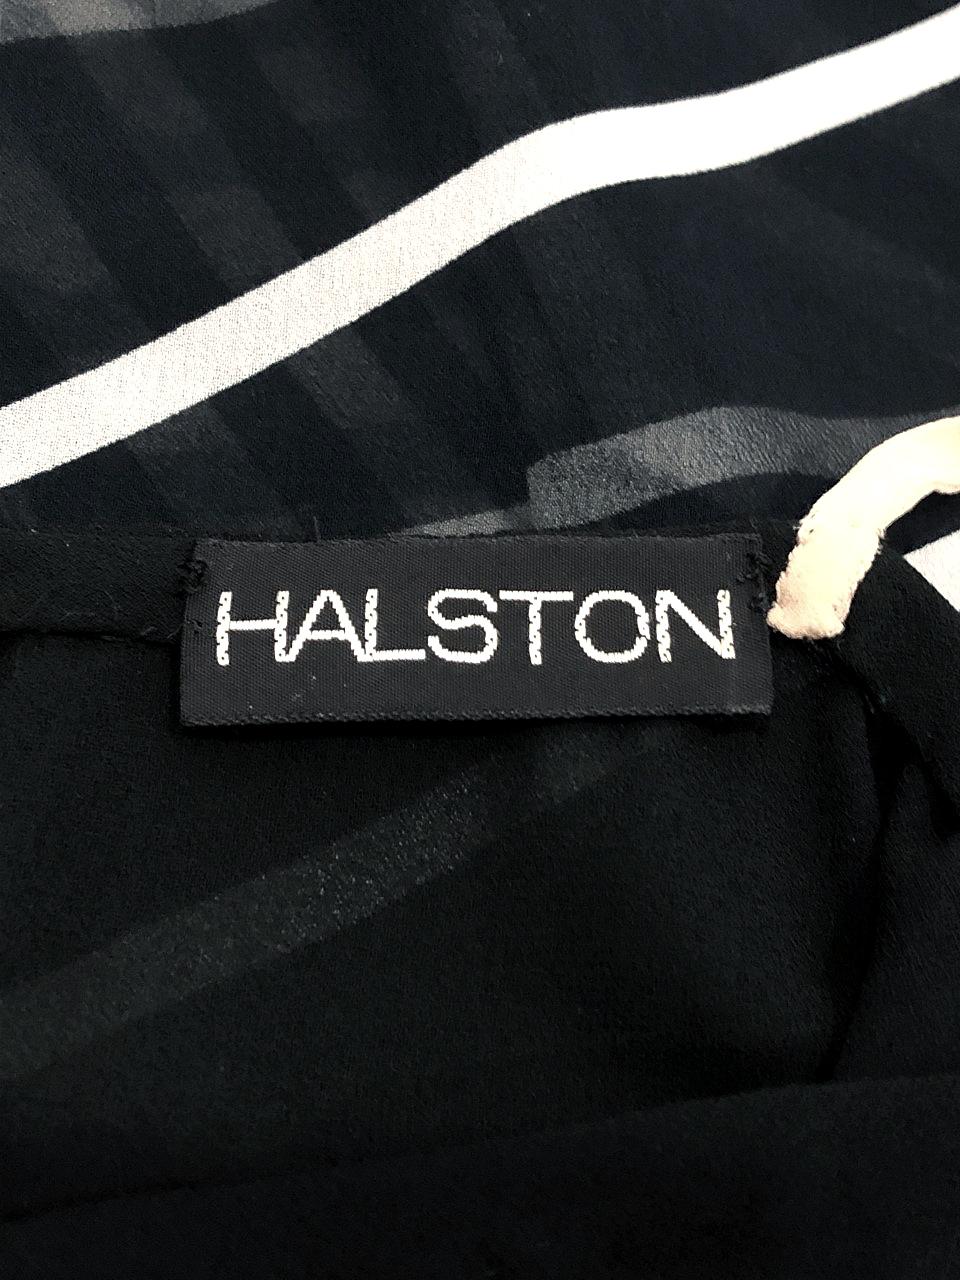 Halston Couture Black and White Graphic Illusion Silk Chiffon Maxi Dress, 1977 4